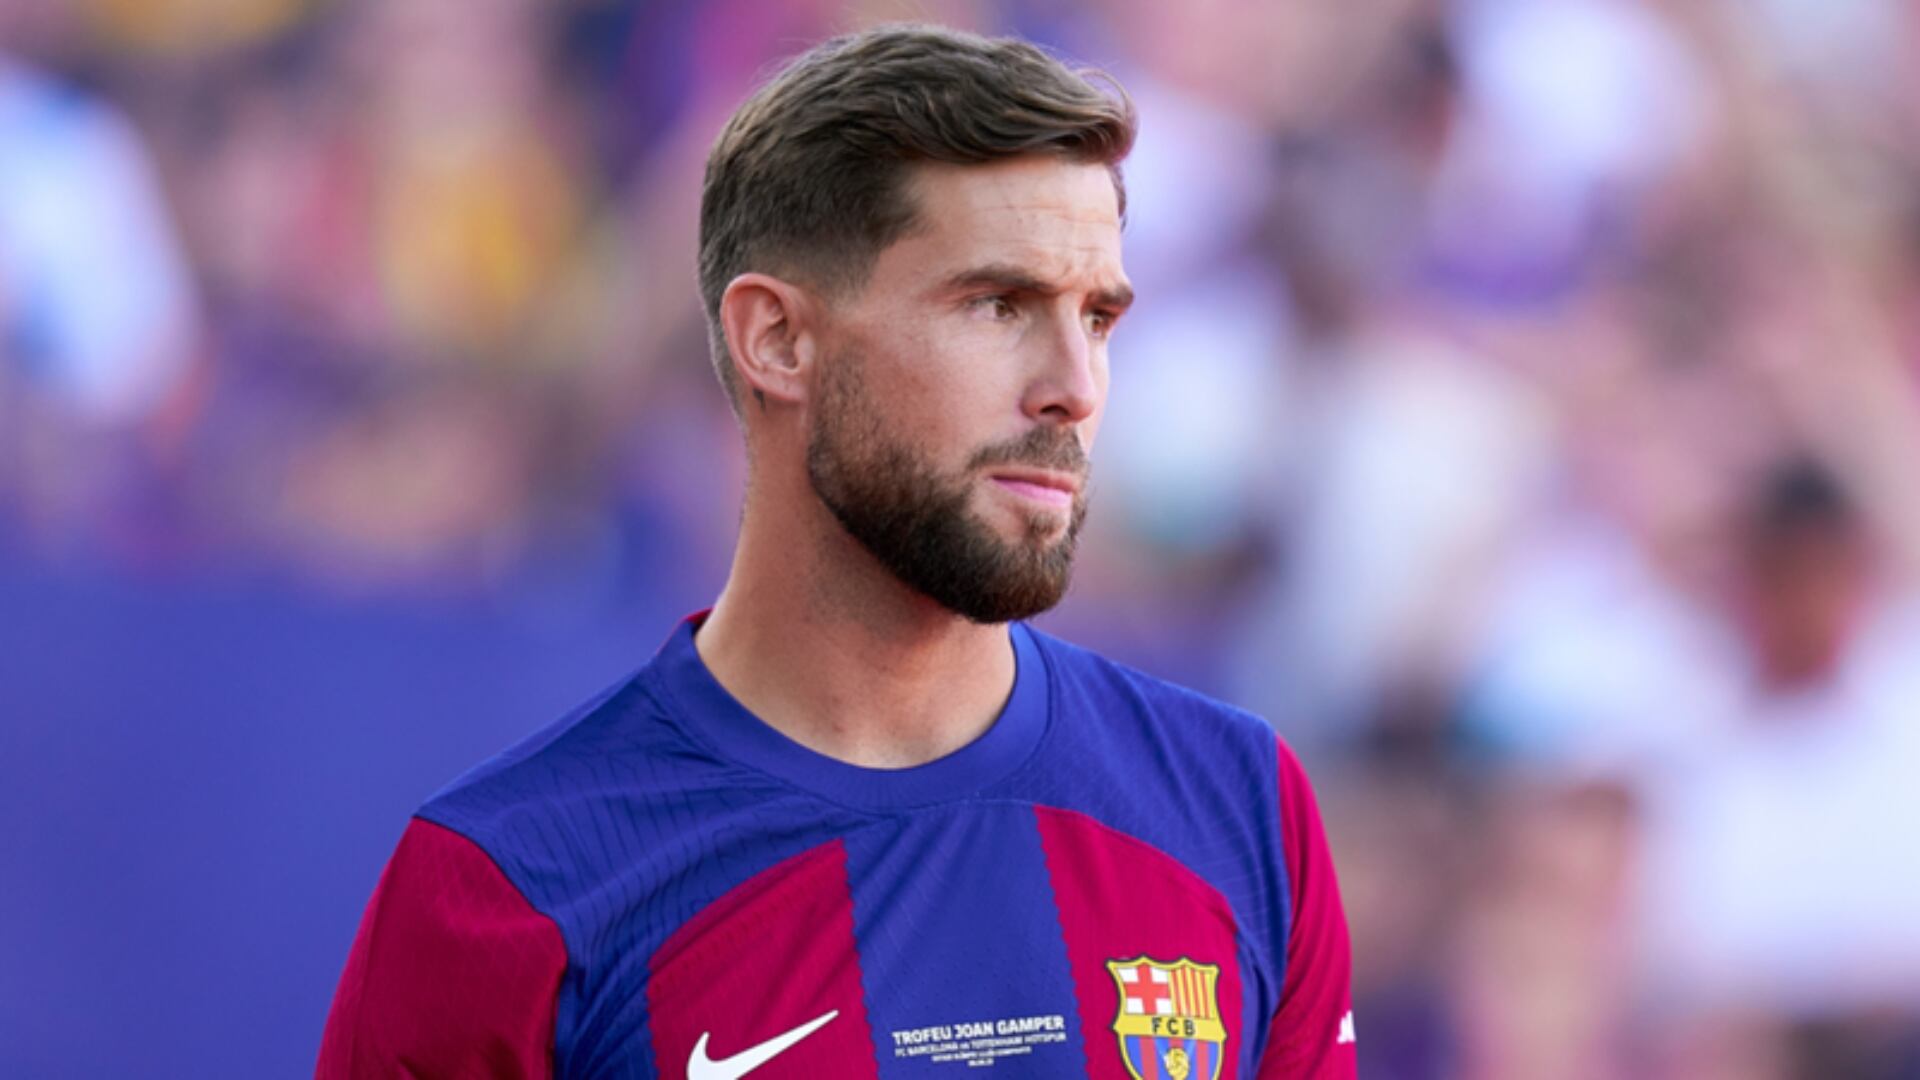 Ha jugado 16 partidos en Barça y piensan mandar a Íñigo Martínez, esto piden